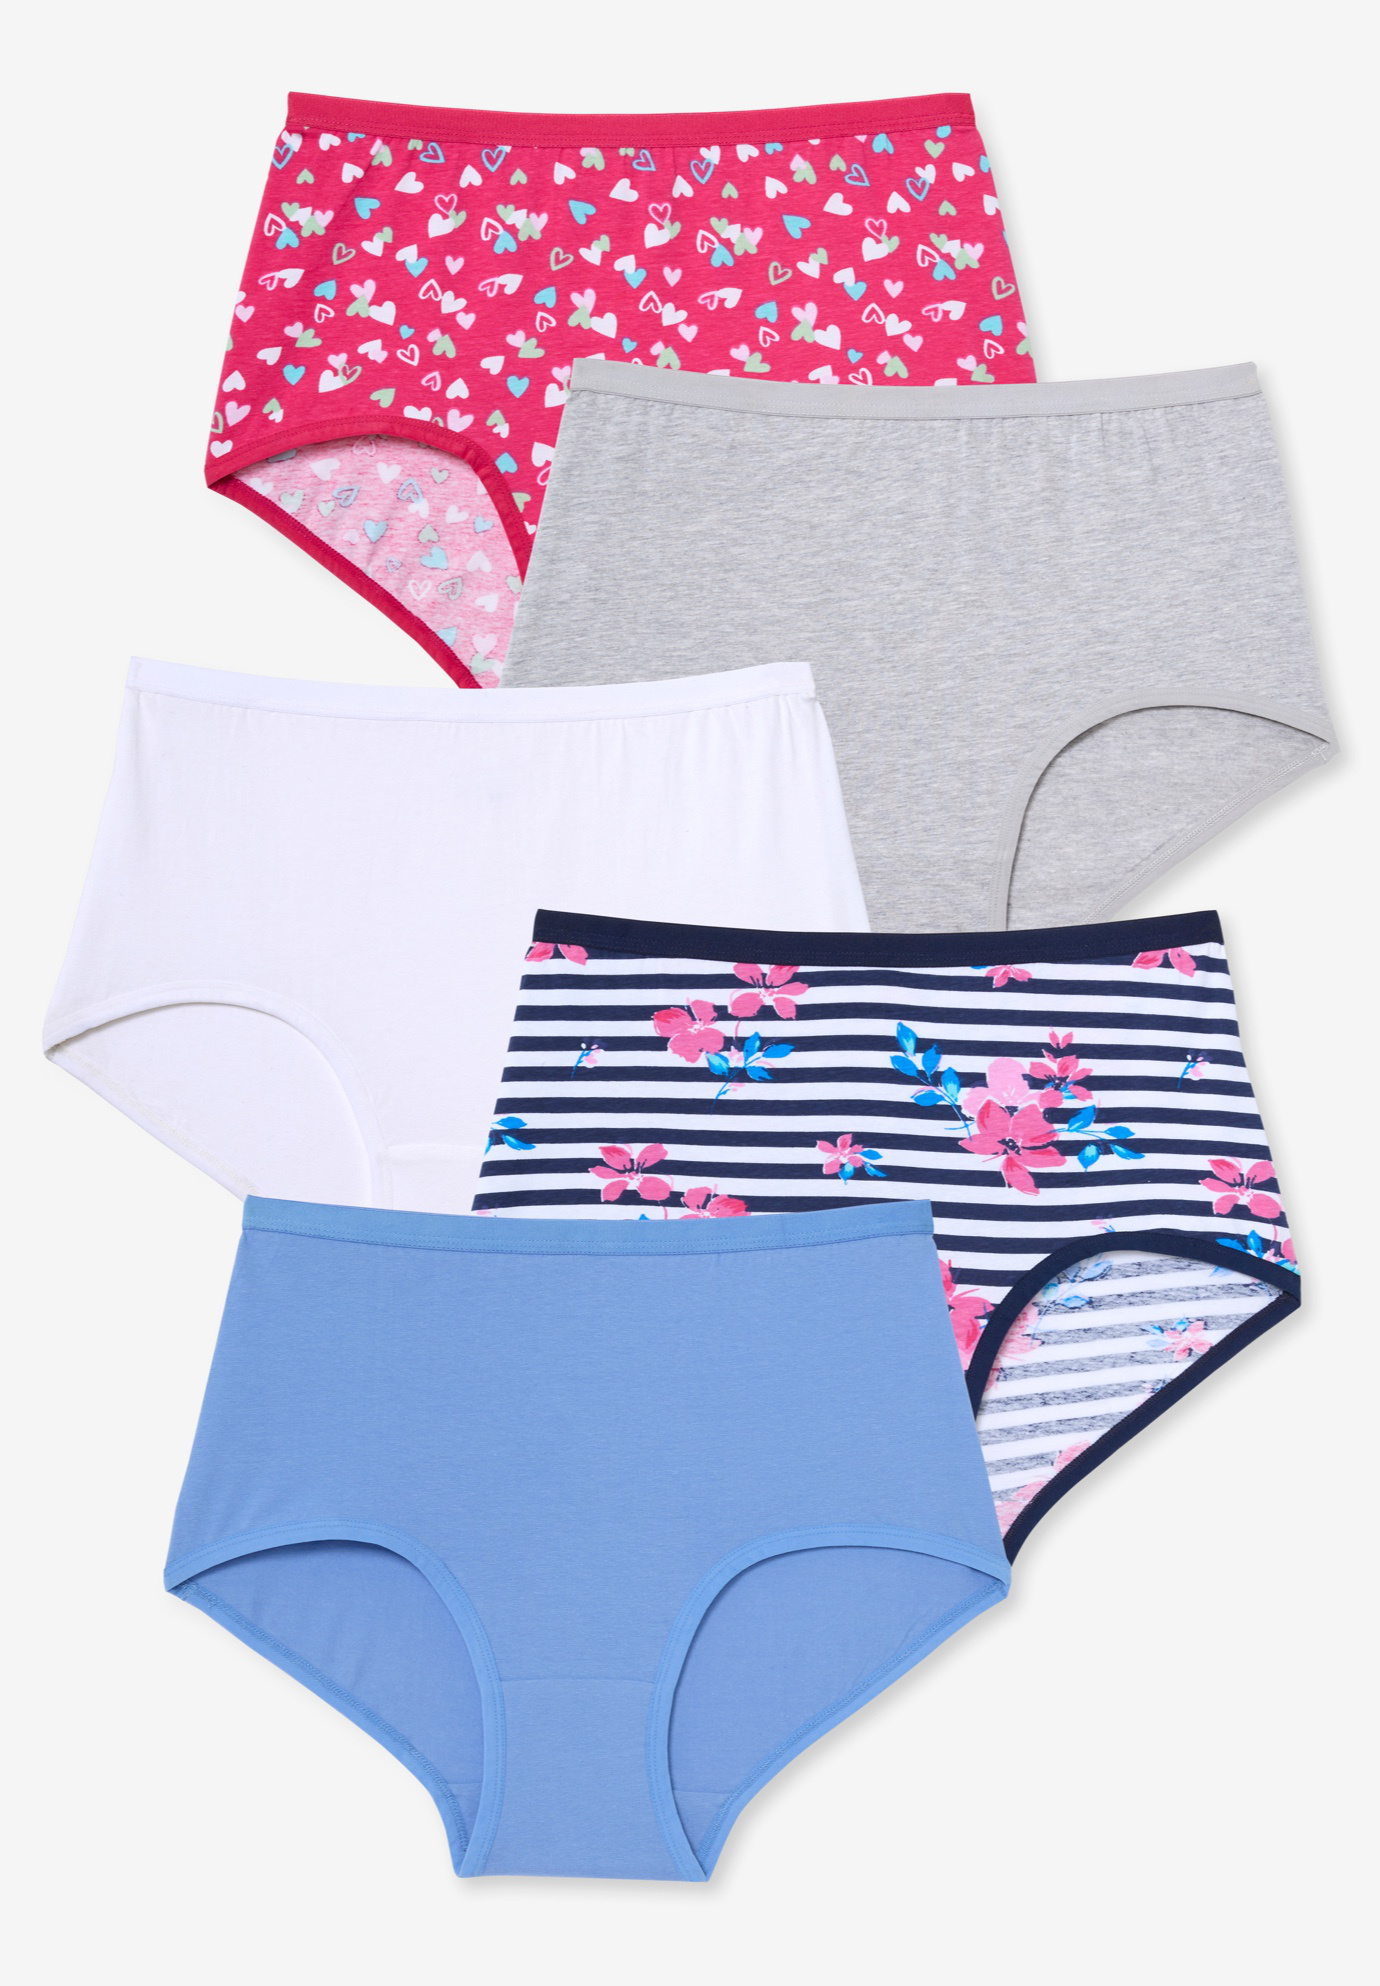 Comfort Choice Women's Plus Size Nylon Brief 10-Pack Underwear - 7